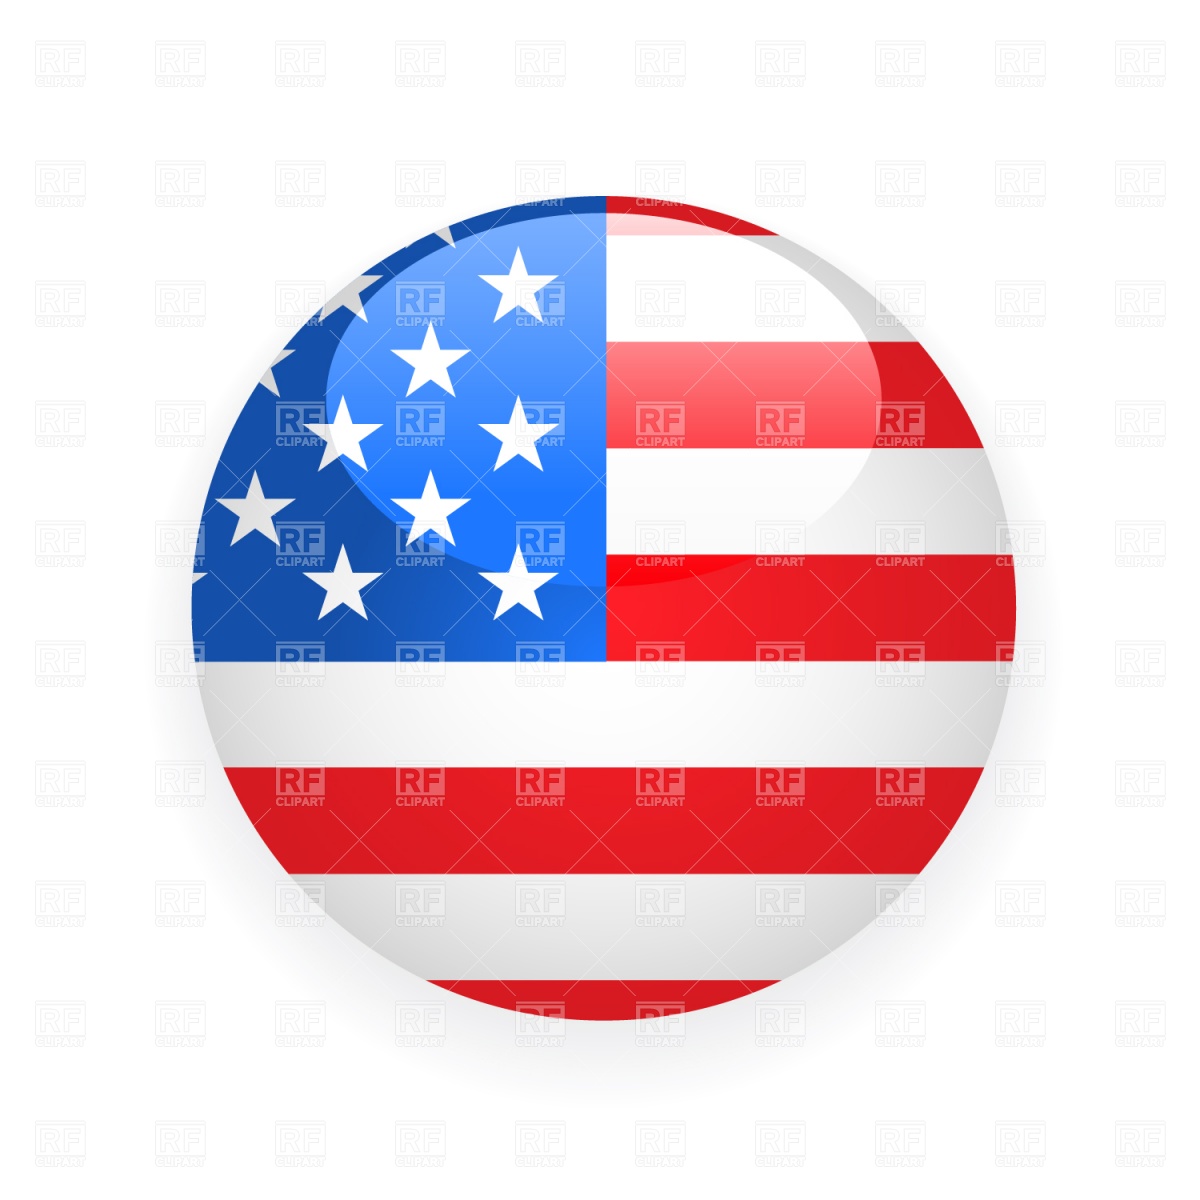 USA Flag Vector Free